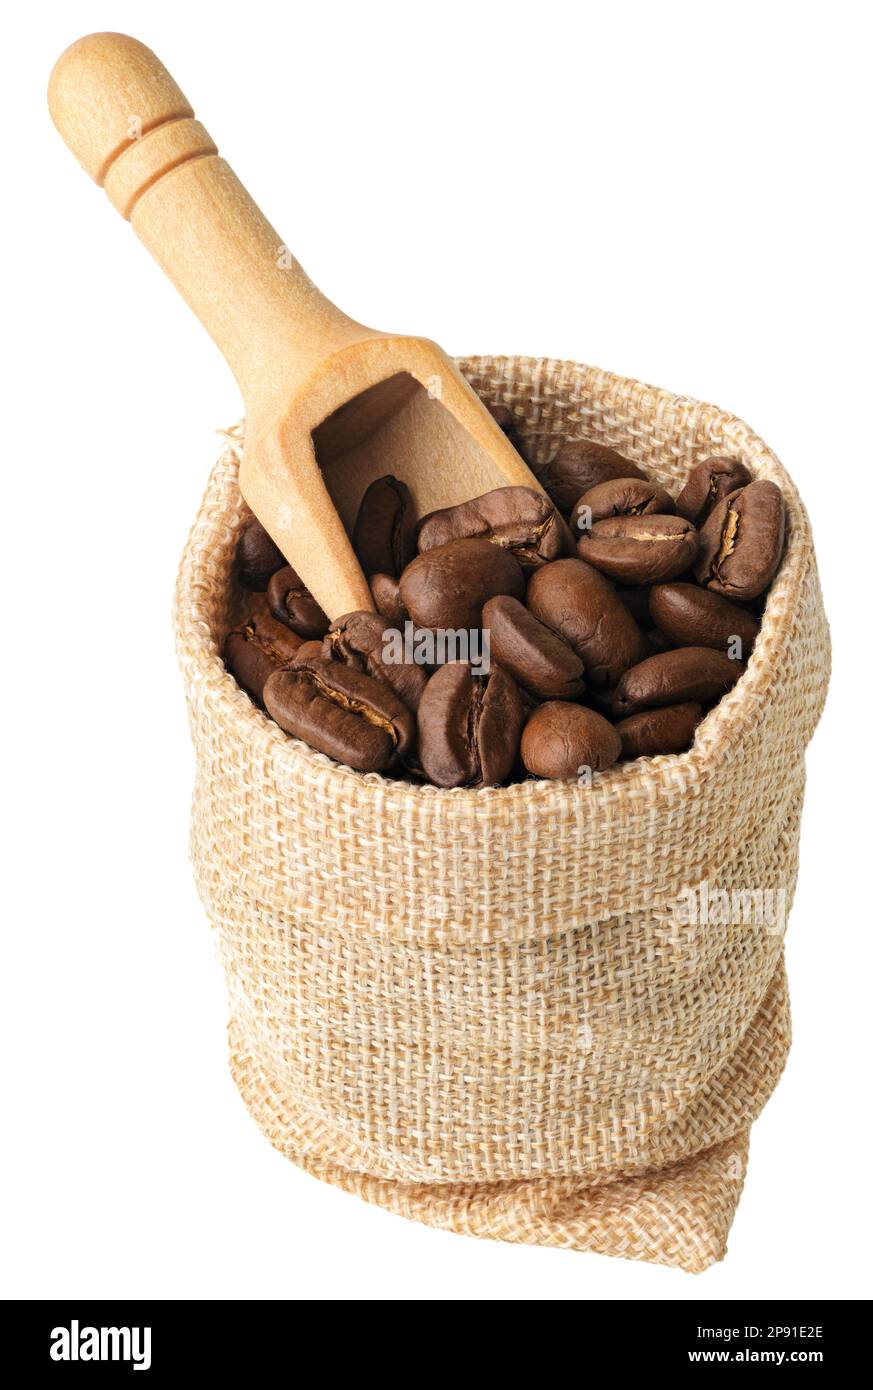 Dunkel geröstete Kaffeebohnen und Holzlöffel in einem groben Leinenbeutel, isoliert auf weißem Hintergrund Stockfoto